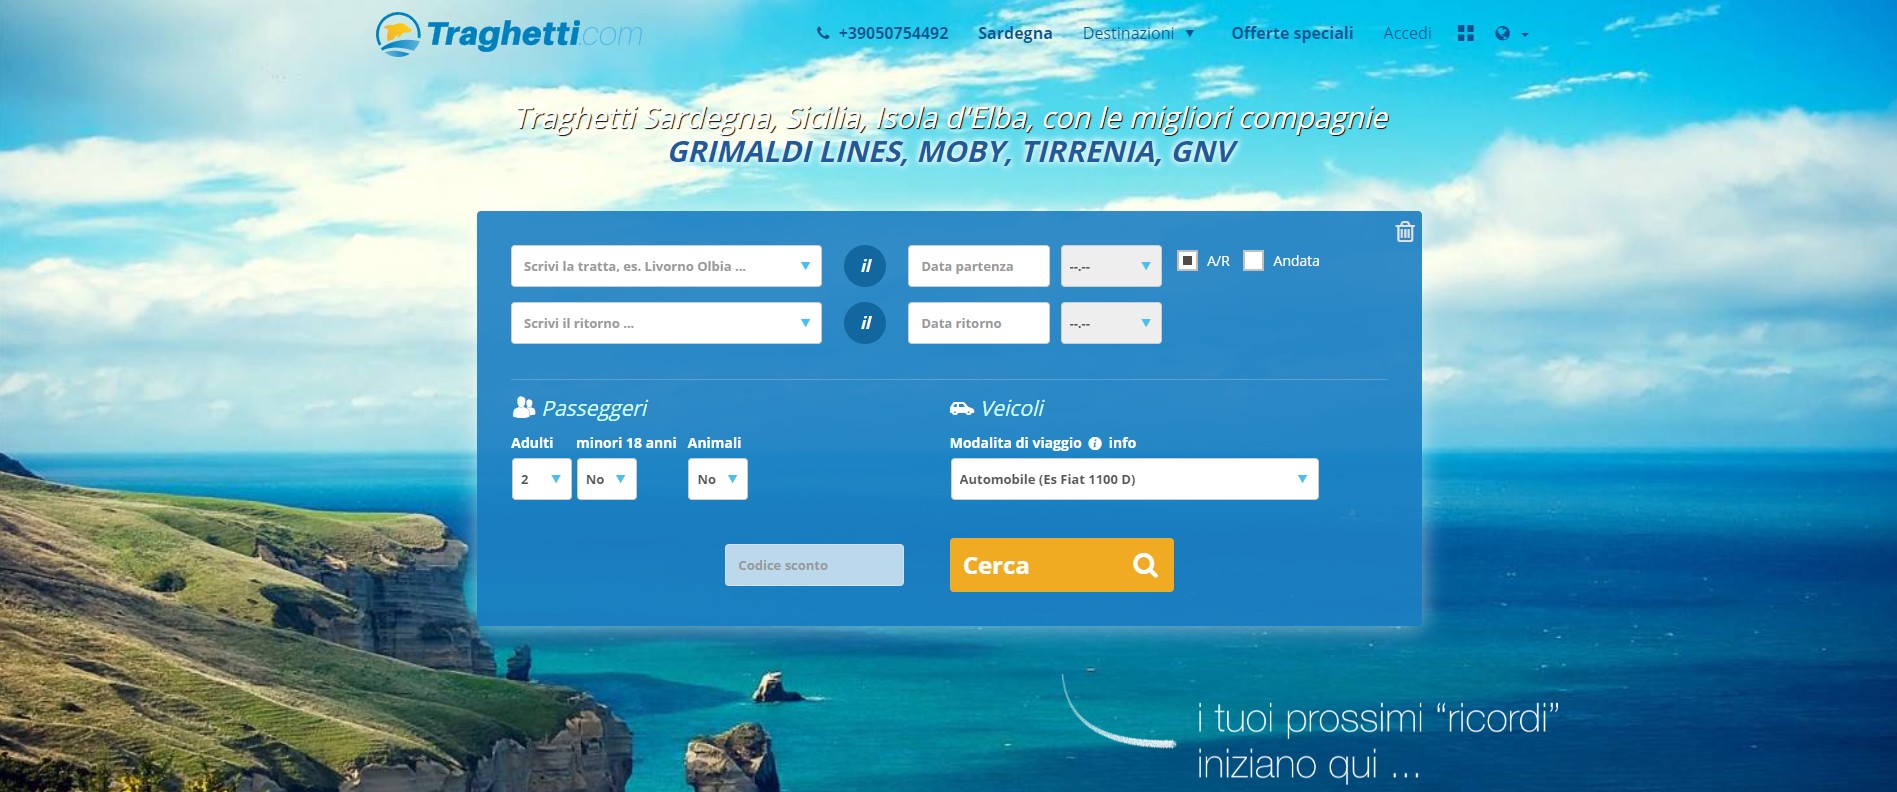 Traghetti.com per le agenzie di viaggi e portali